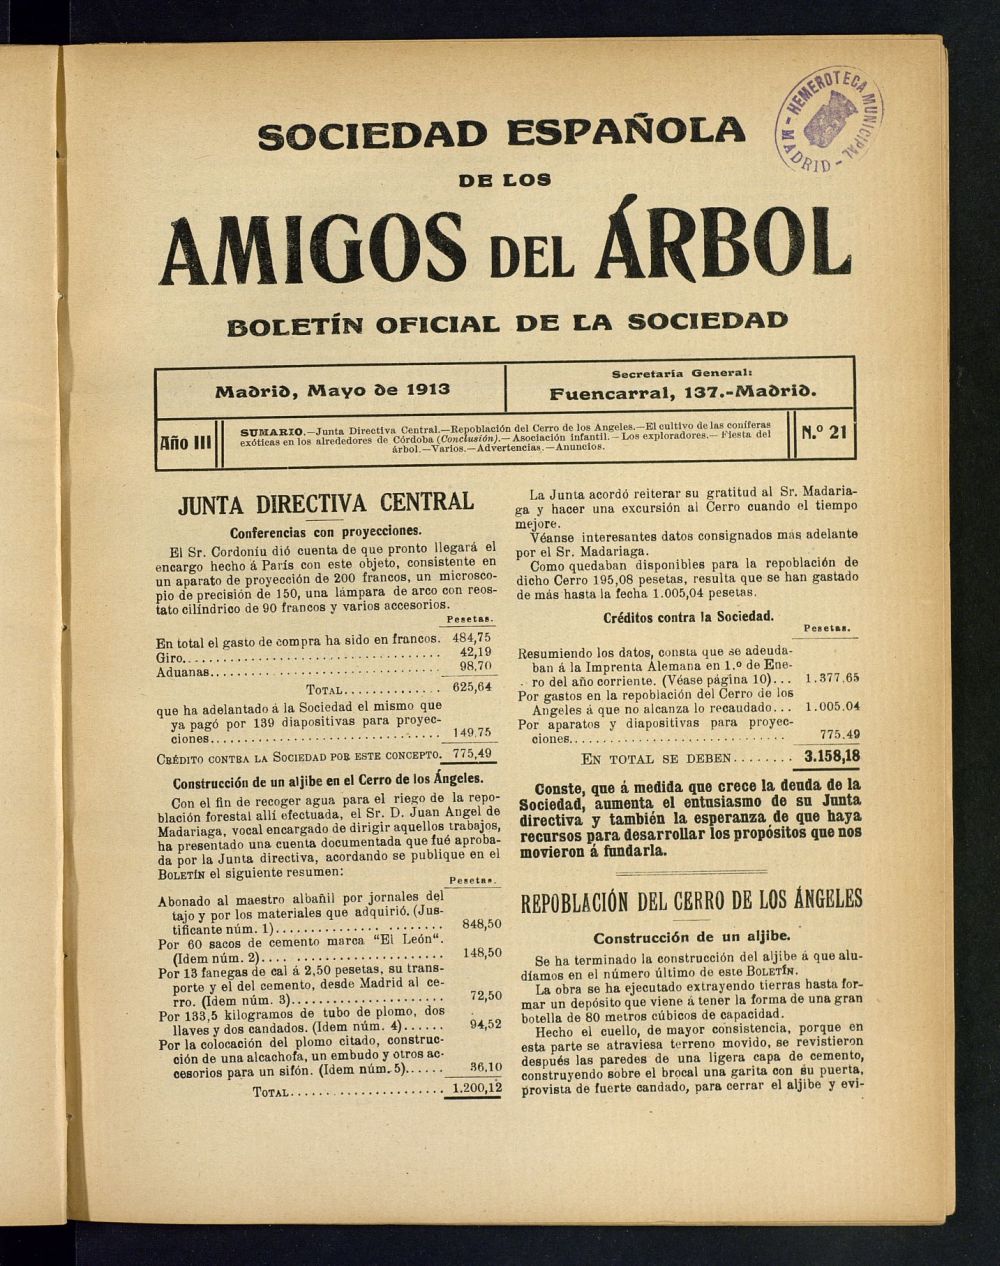 Boletn Comisin organizadora de la Sociedad Espaola de los amigos del rbol de mayo de 1913